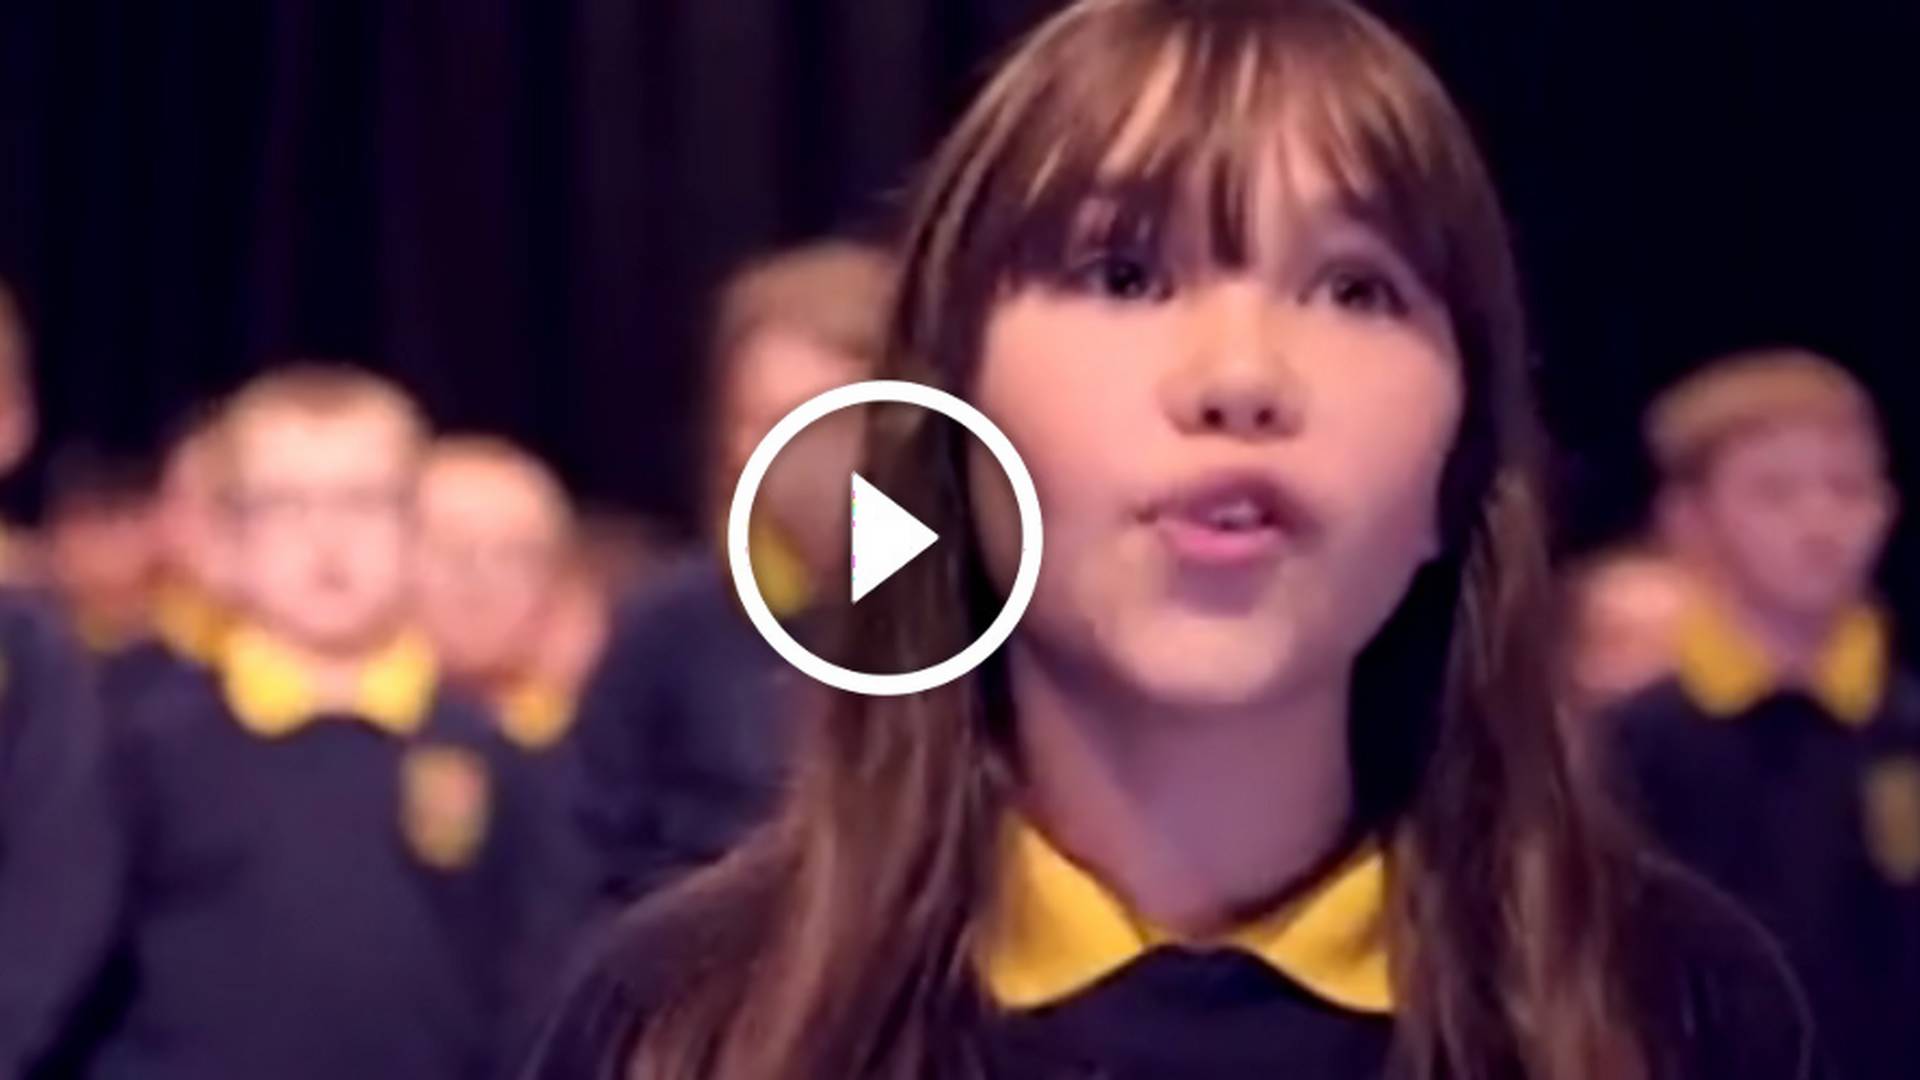 Autystyczna 10-latka zaśpiewała na szkolnej gali "Hallelujah". Internet ją pokochał (2,9 mln wyświetleń)